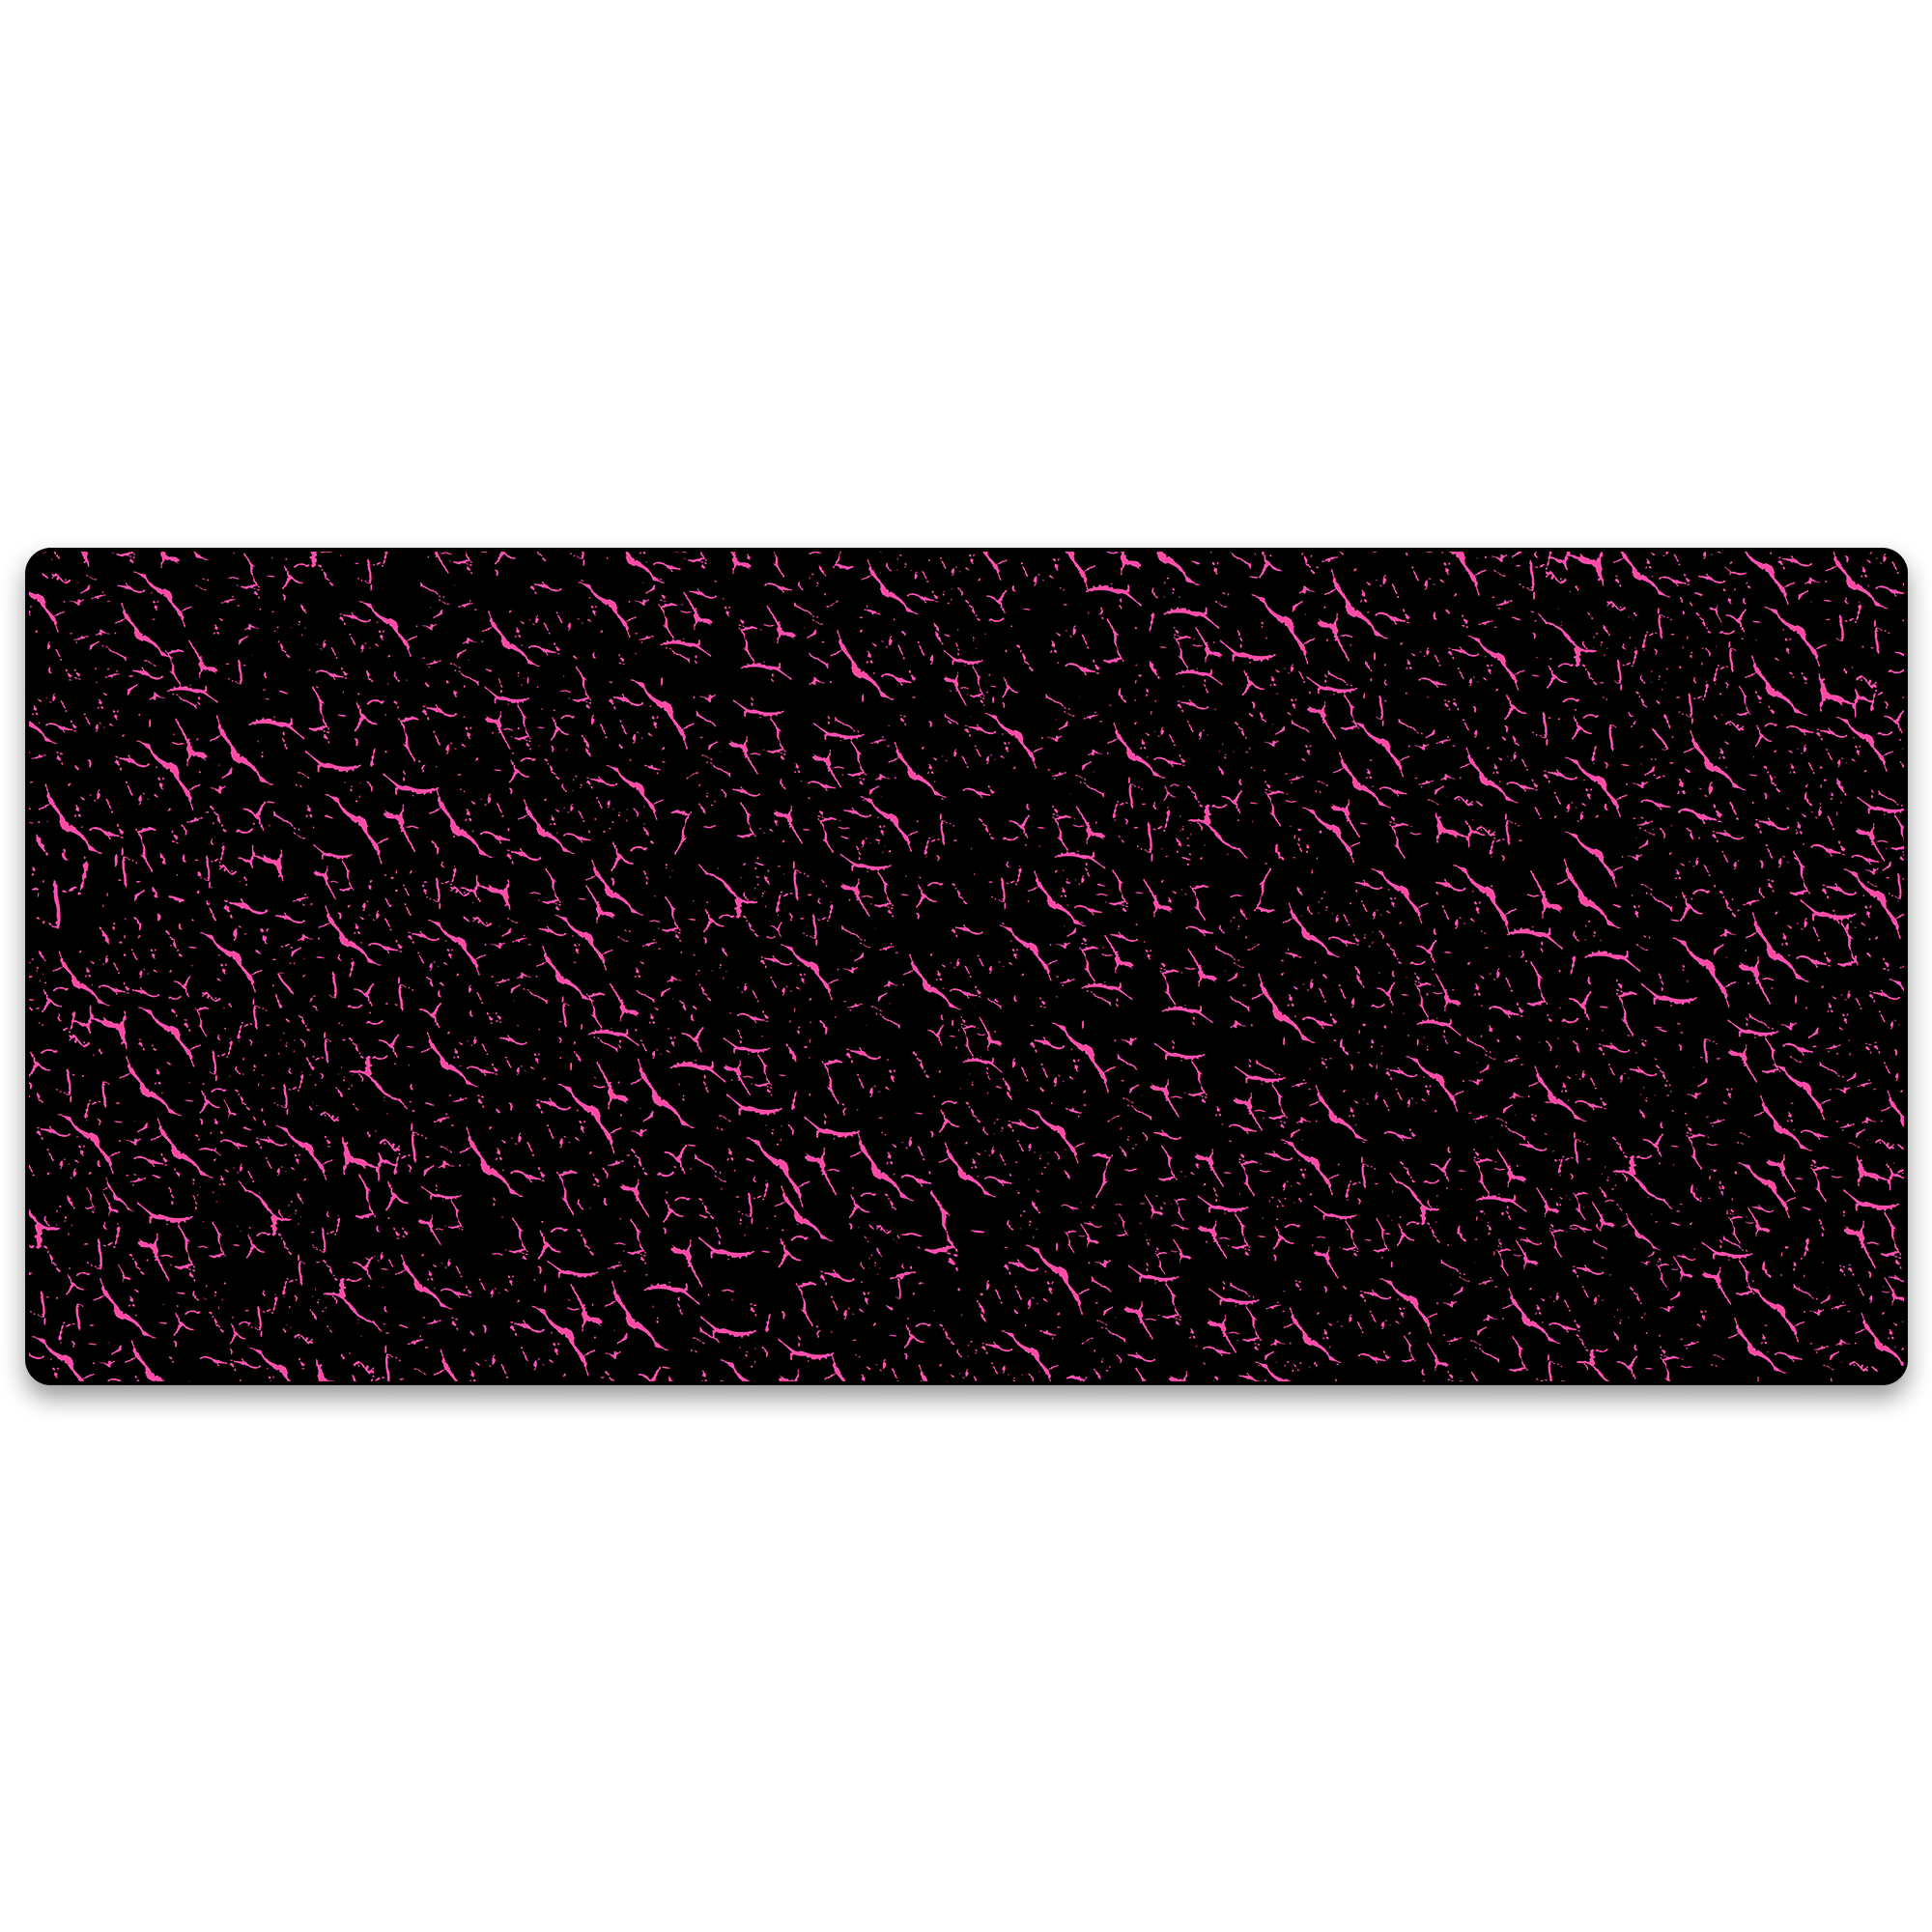 Kraken XXL Gaming Mouse Pad - Black & Pink Tiger